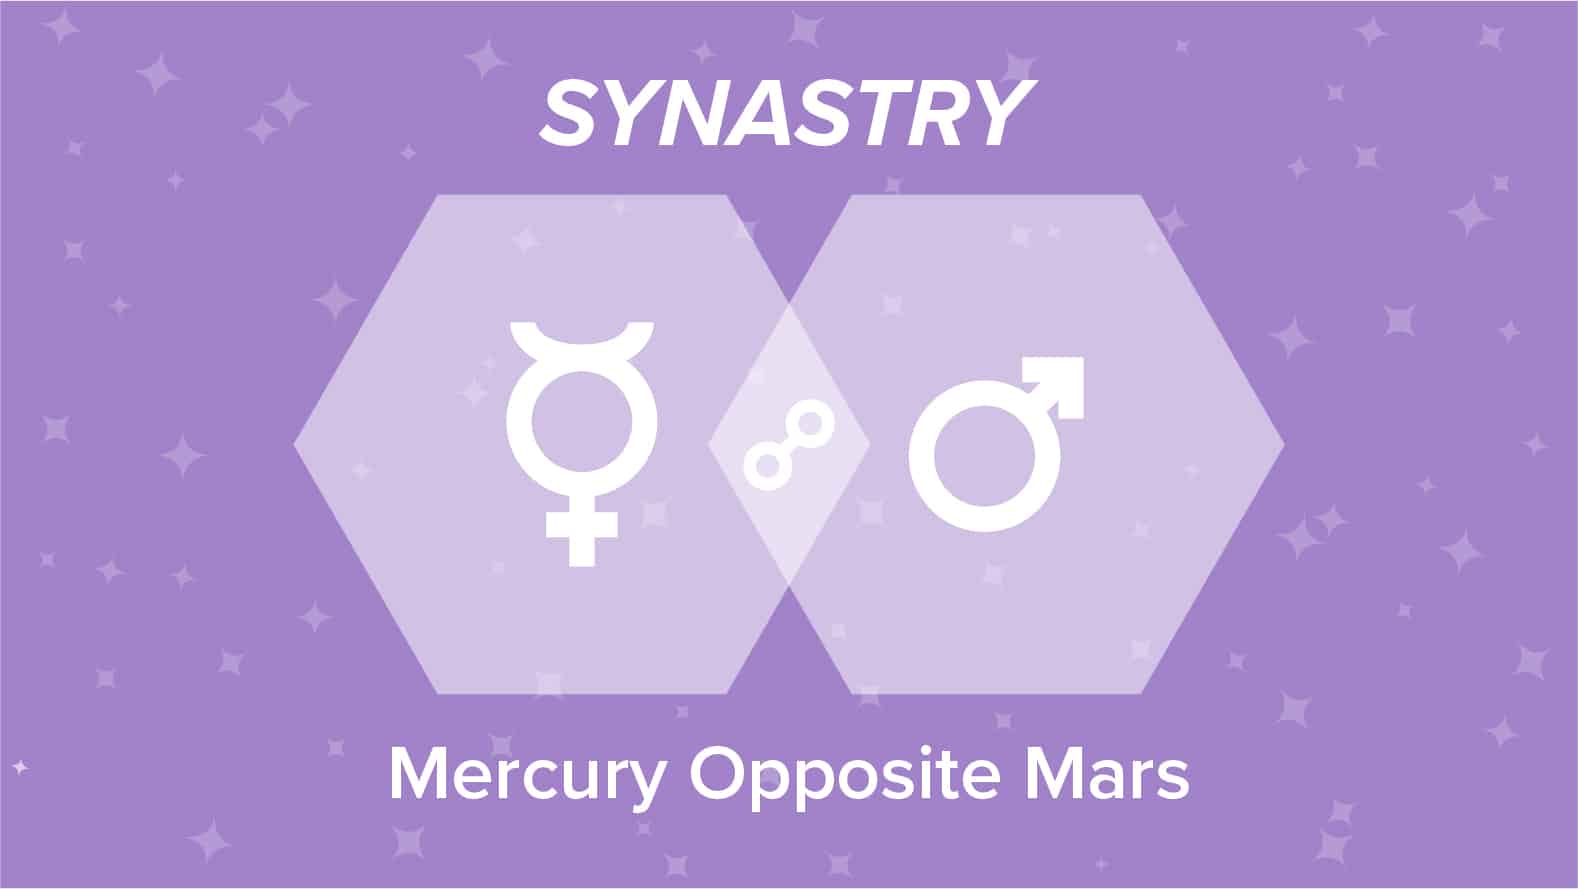 Mercury Opposite Mars Synastry